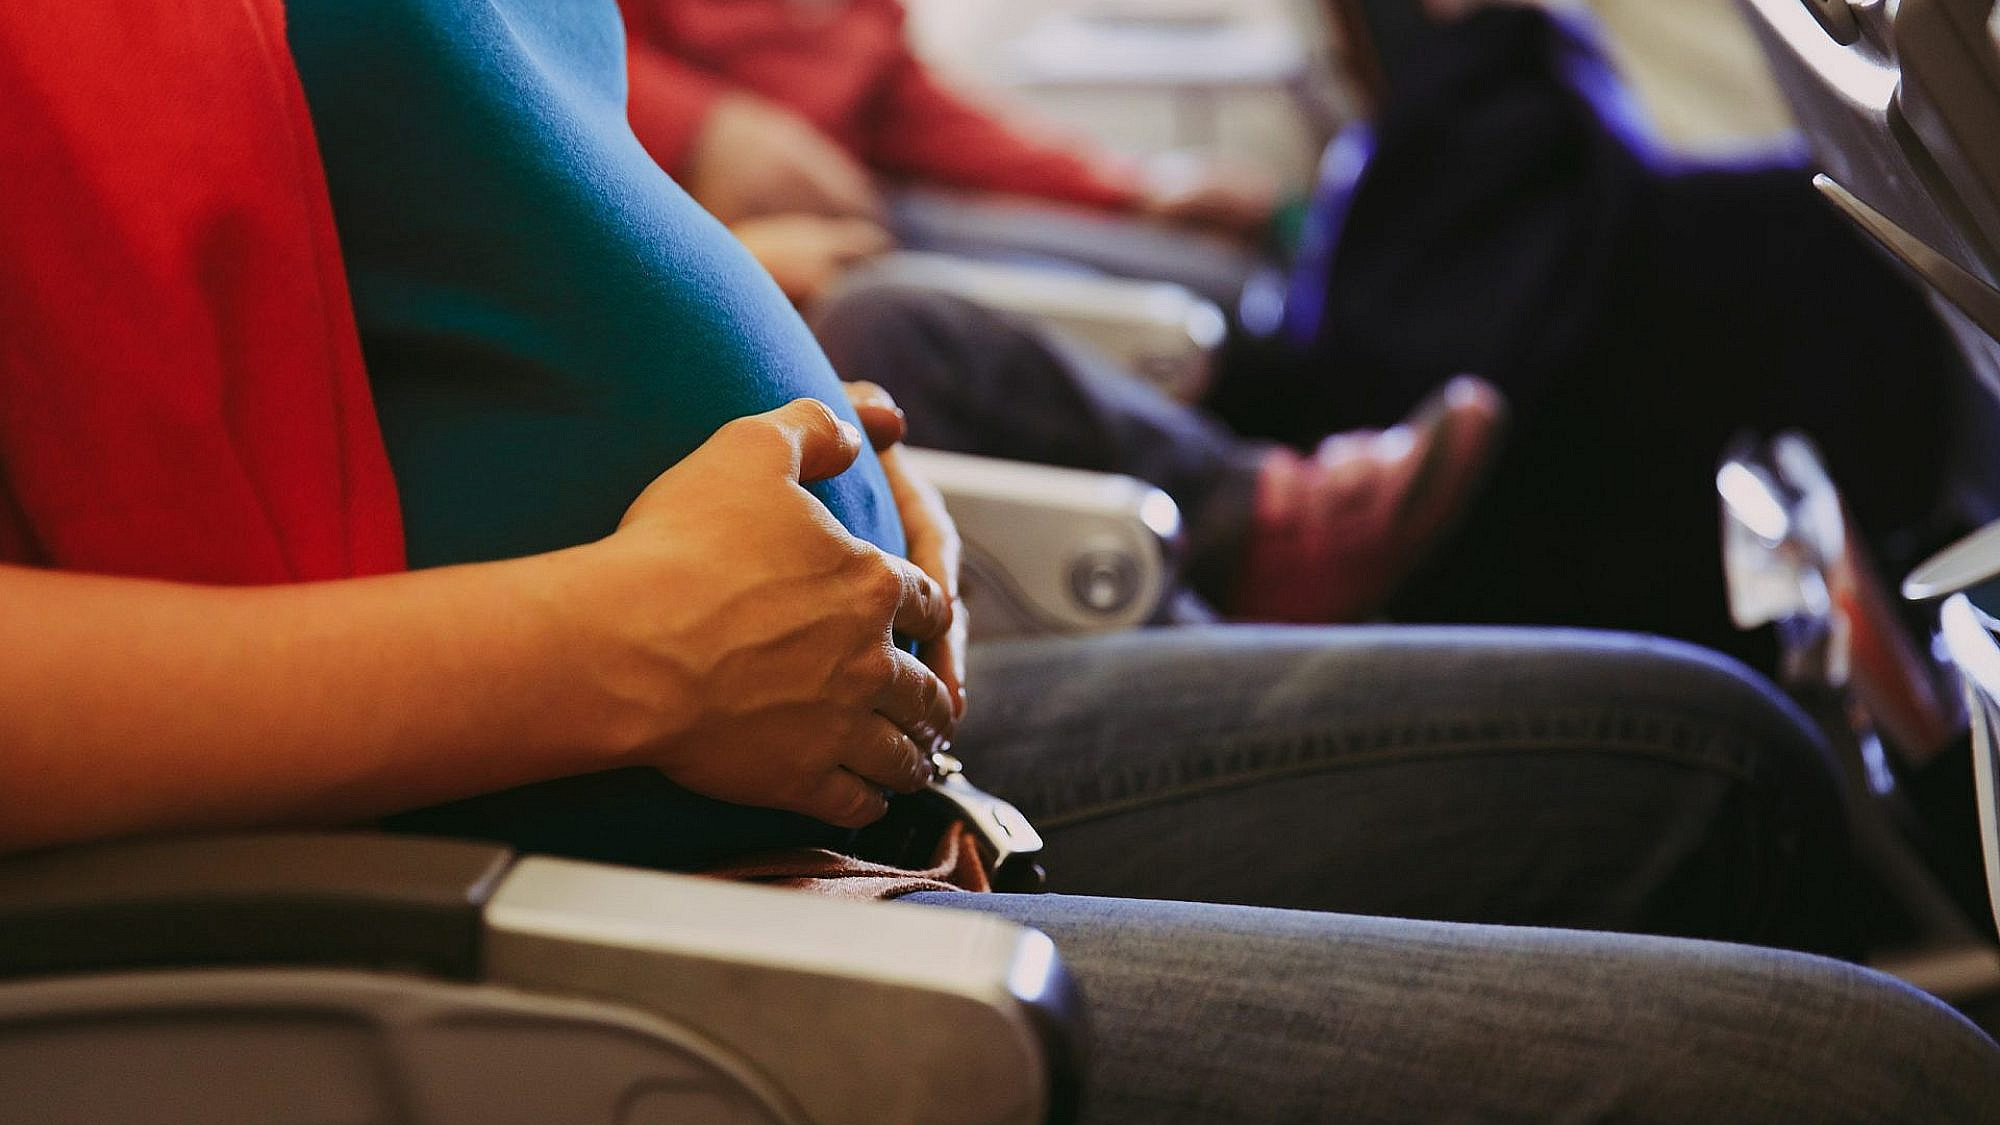 אין מניעה רפואית לטוס במהלך ההריון כל עוד ההריון תקין | צילום: Shutterstock